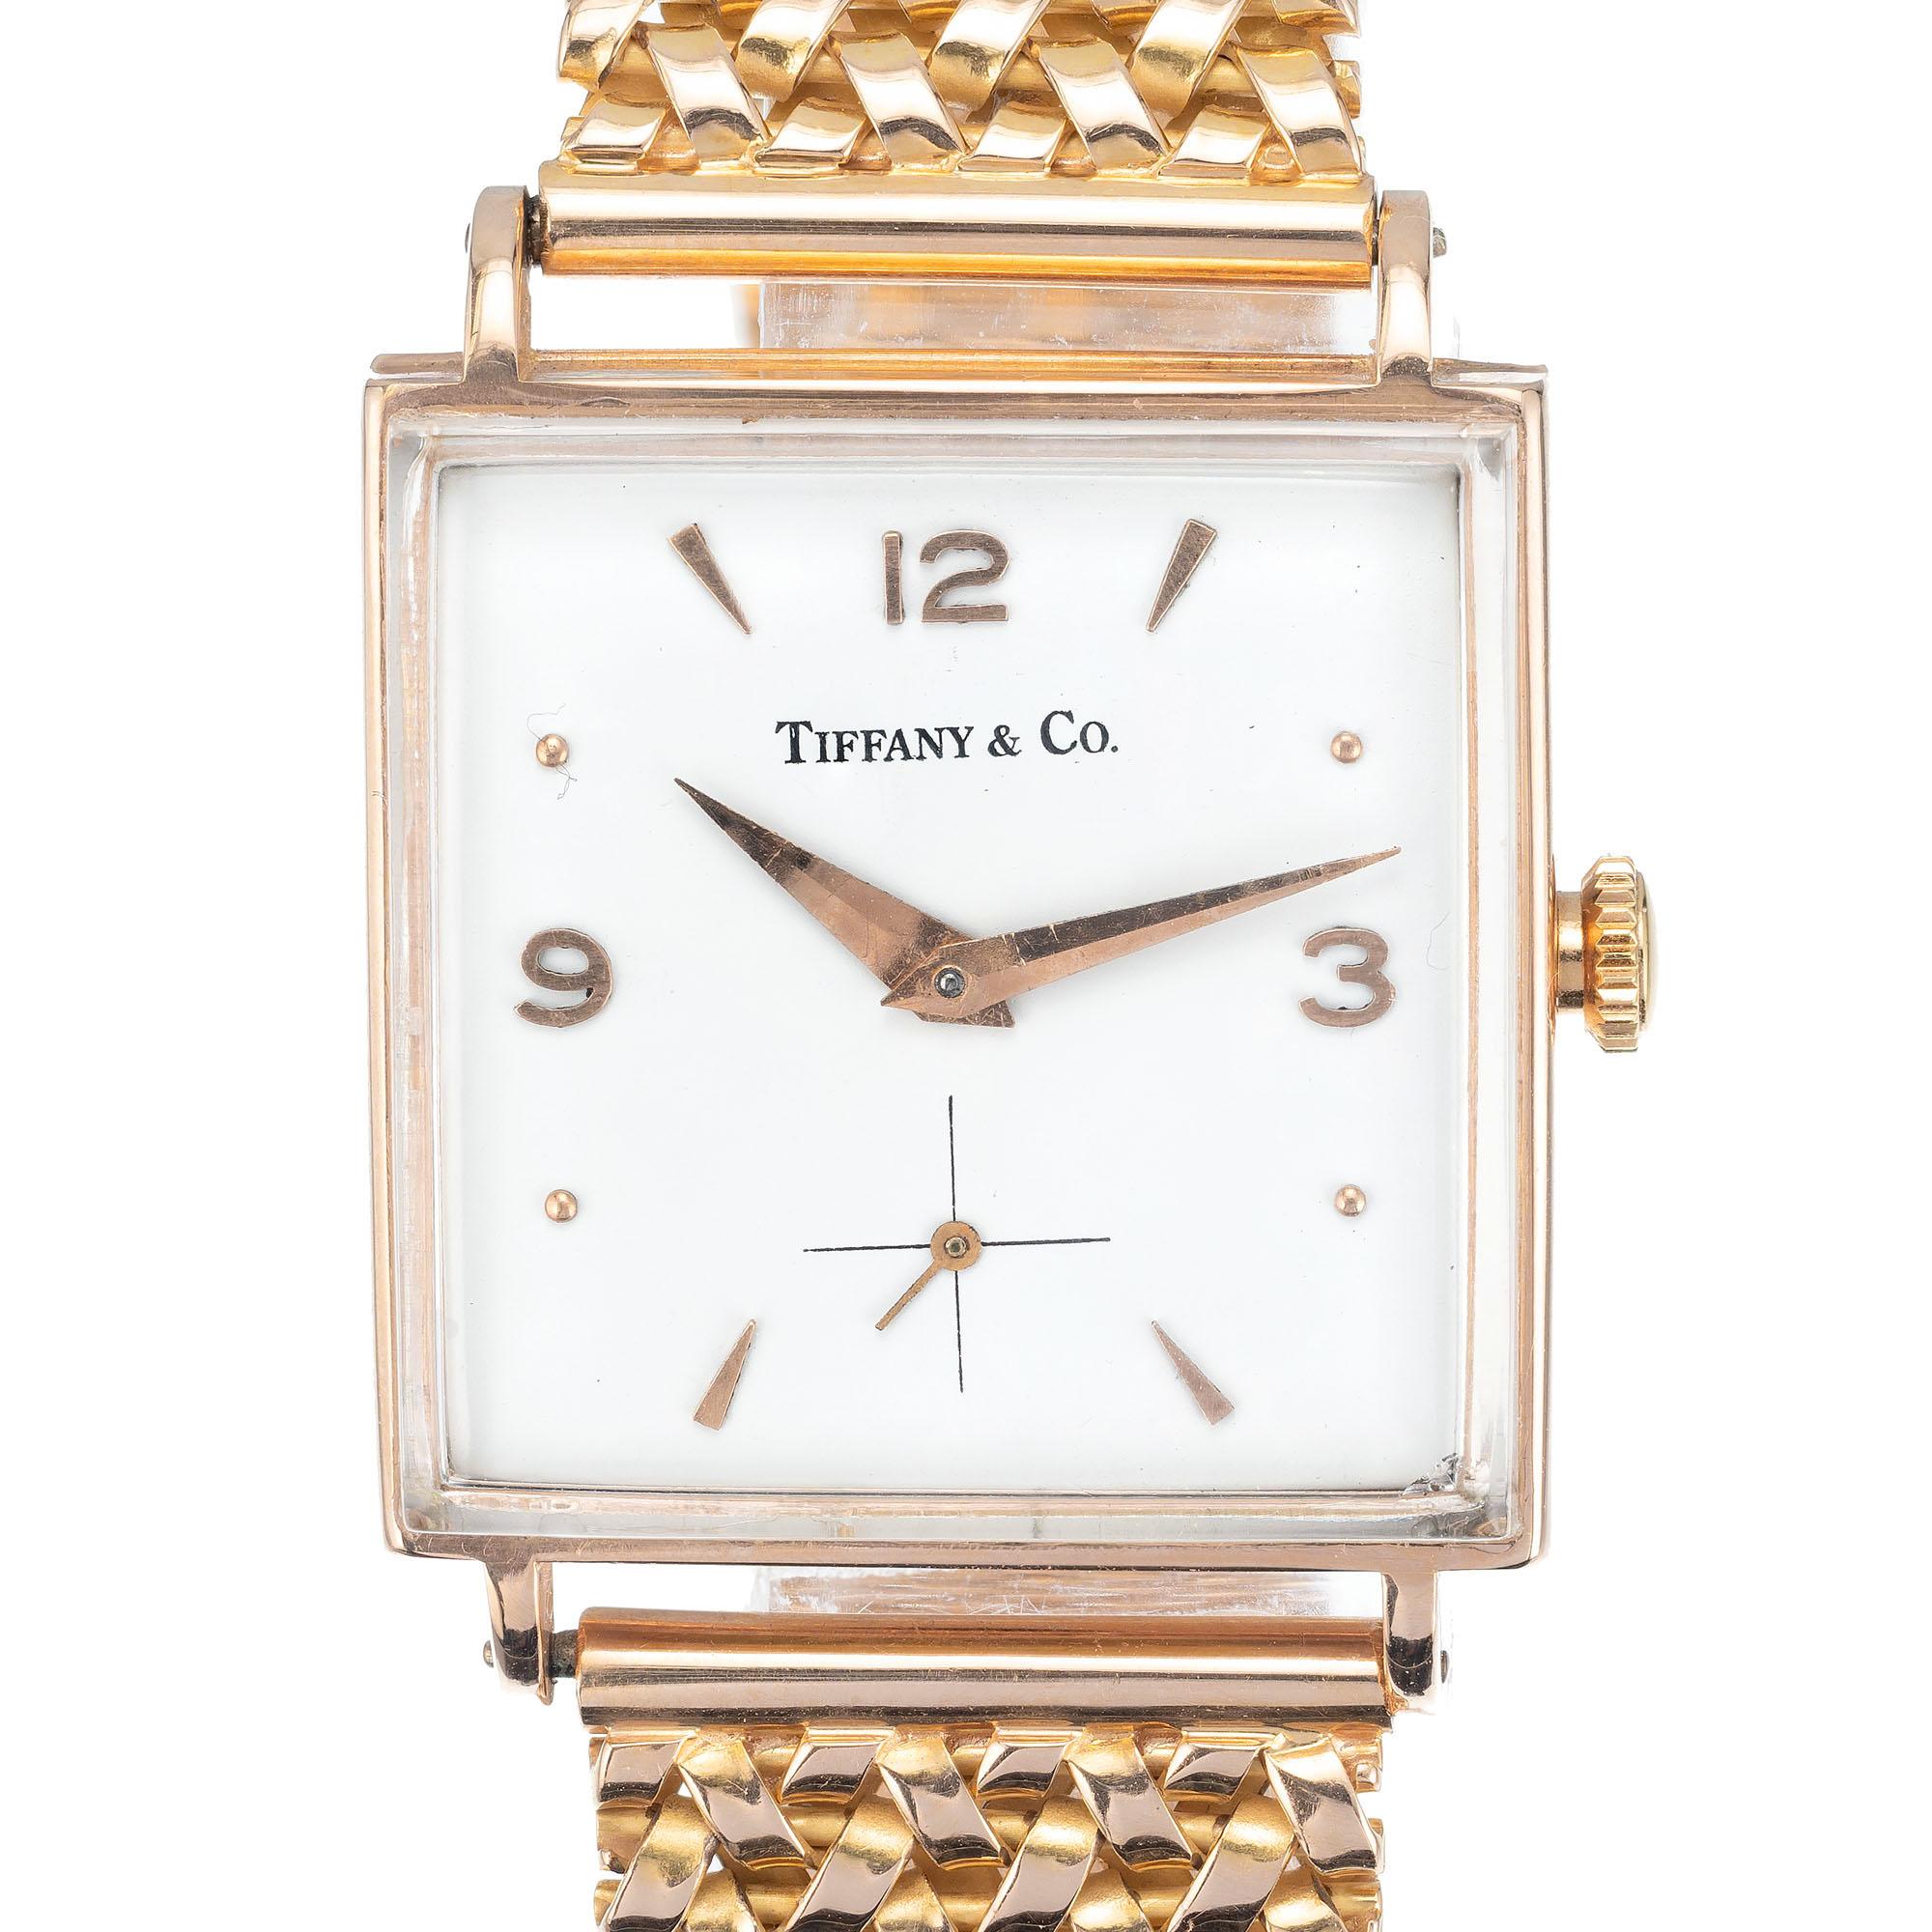 1950's Tiffany & Co Universal Geneve 18k Rose Gold Uhr mit Rose Gold Mesh-Band und off weißes Zifferblatt mit Rose Gold Markierungen und Zeiger.

18k Roségold
70.5 Gramm
Riemenlänge: 7 ¼ bis 7 5/8 Zoll
Länge: 34,75 mm
Breite: 27 mm
Breite des Bandes